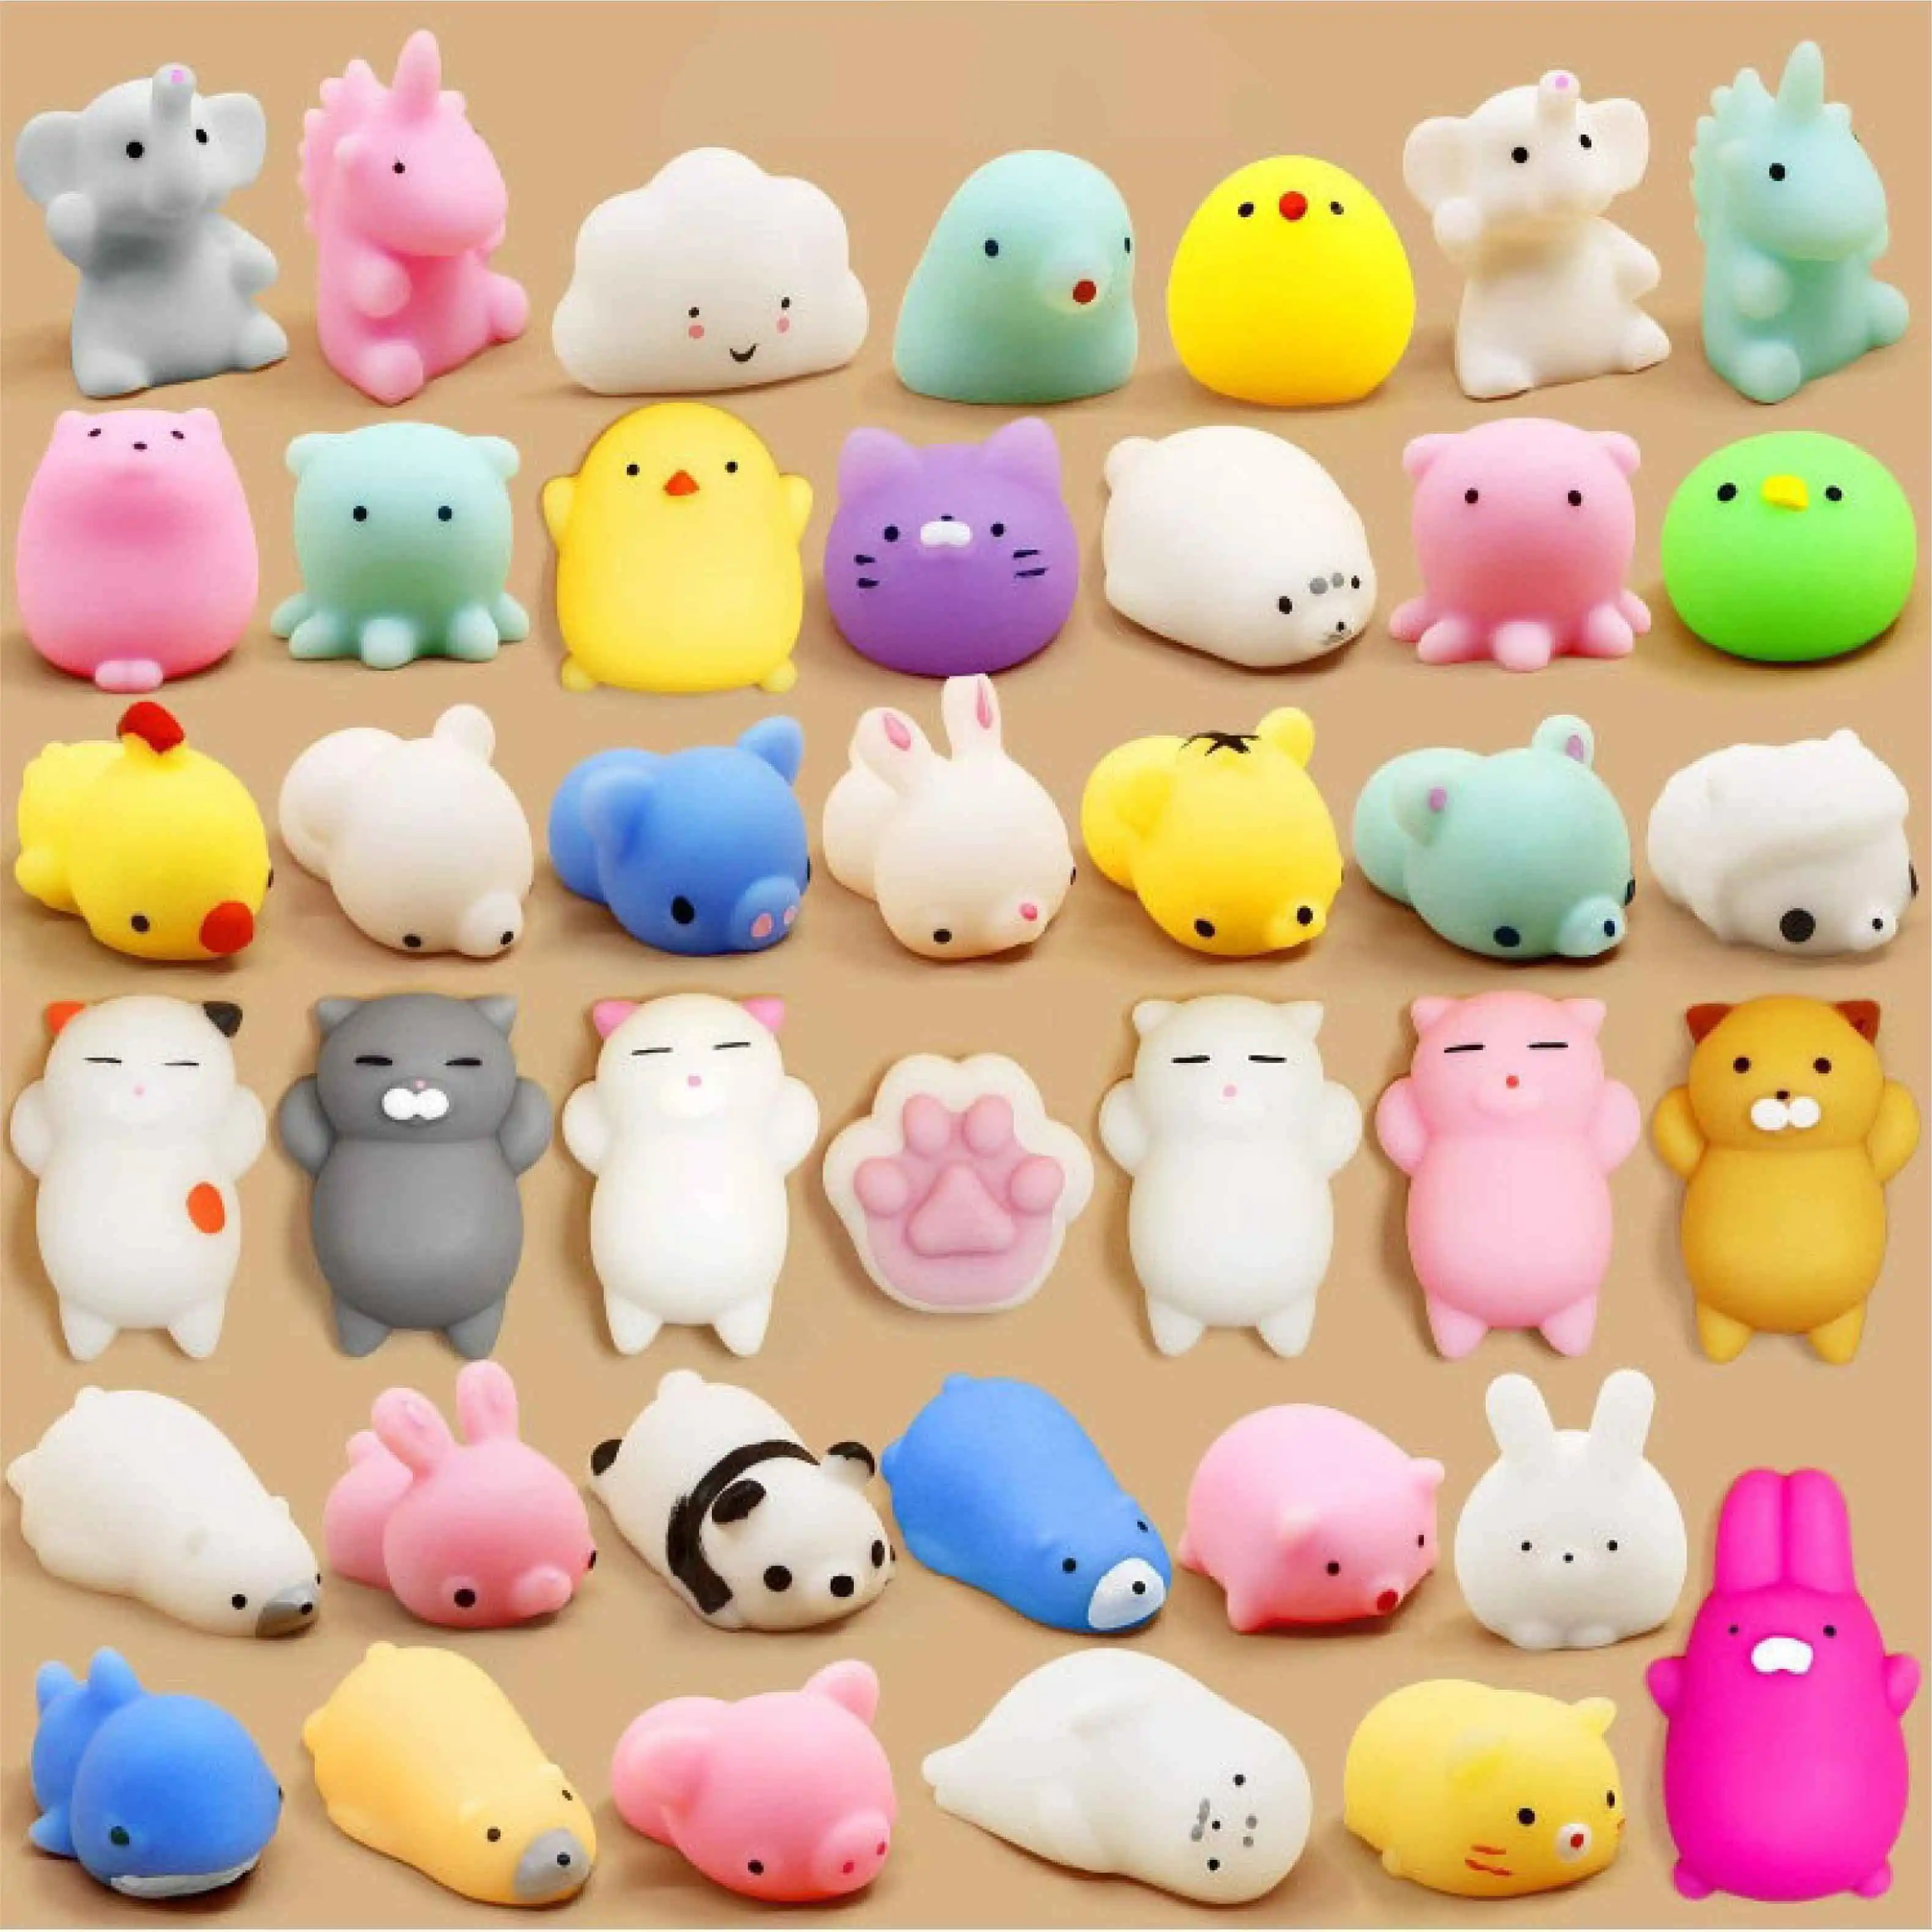 전체 판매 무작위 색상 디자인 빛 어두운 TPR 소재 작은 장난감 동물 오징어 미니 크기 모찌 질퍽한 동물 장난감